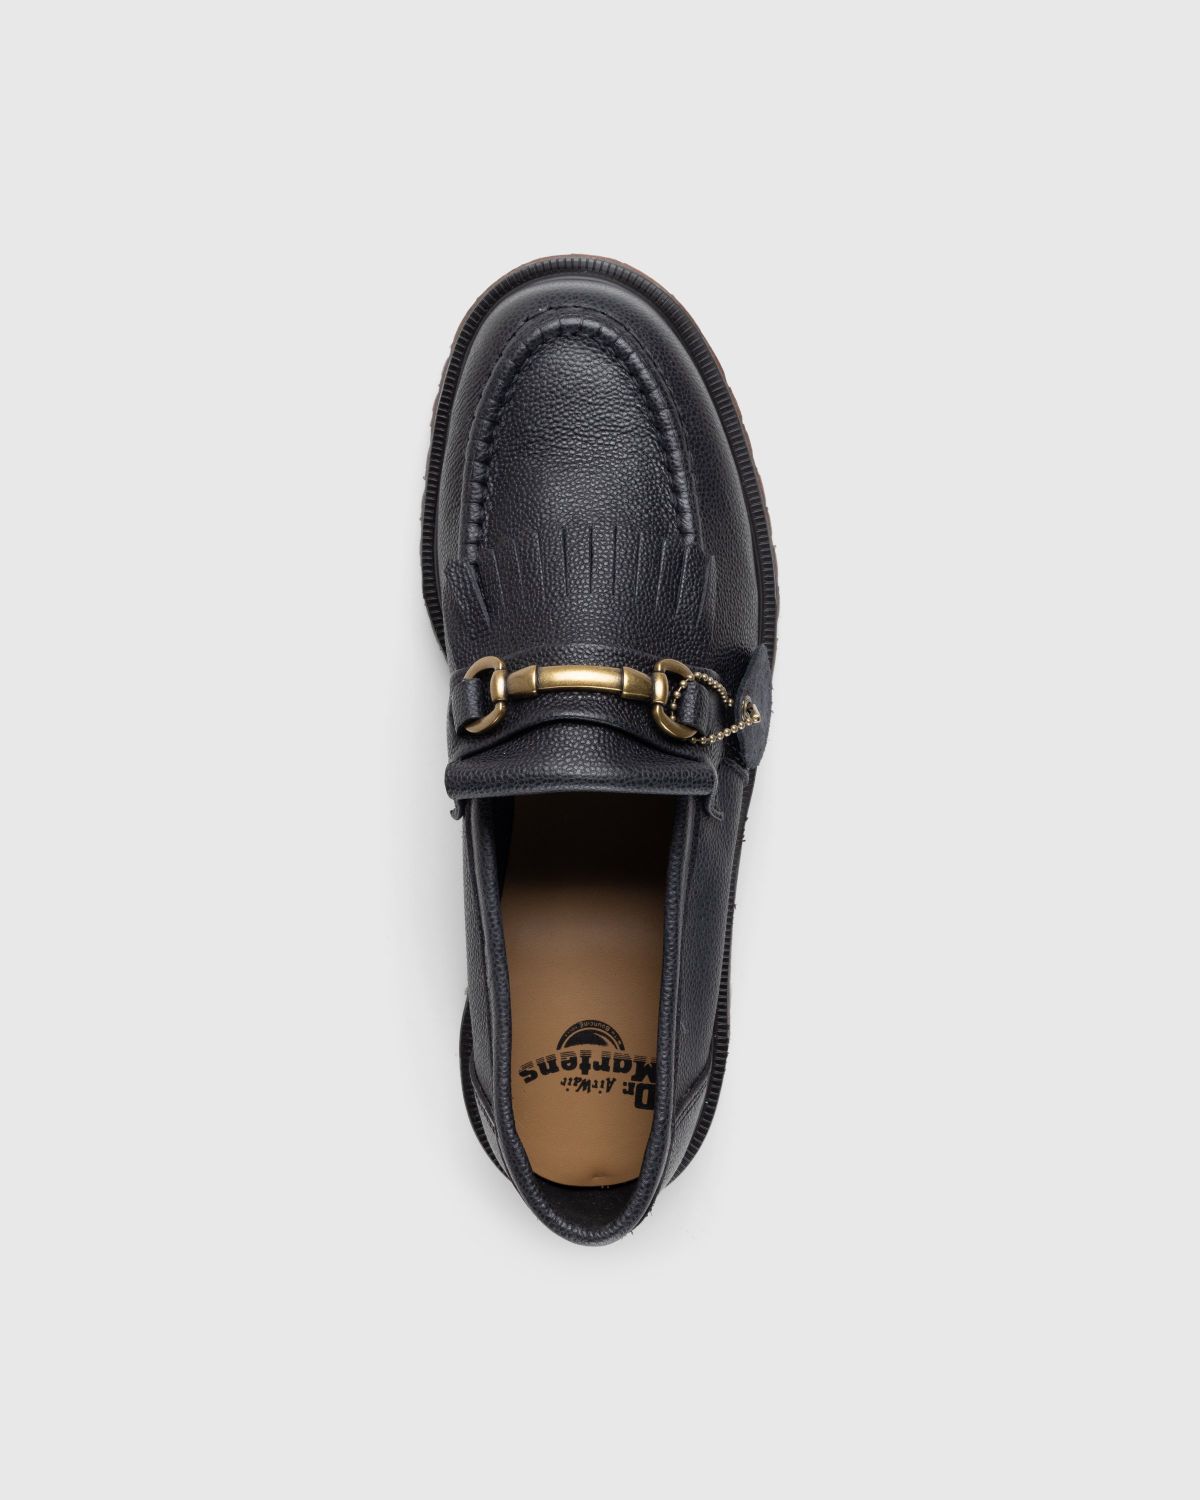 Dr. Martens – Adrian Snaffle Westminster Black - Shoes - Black - Image 5